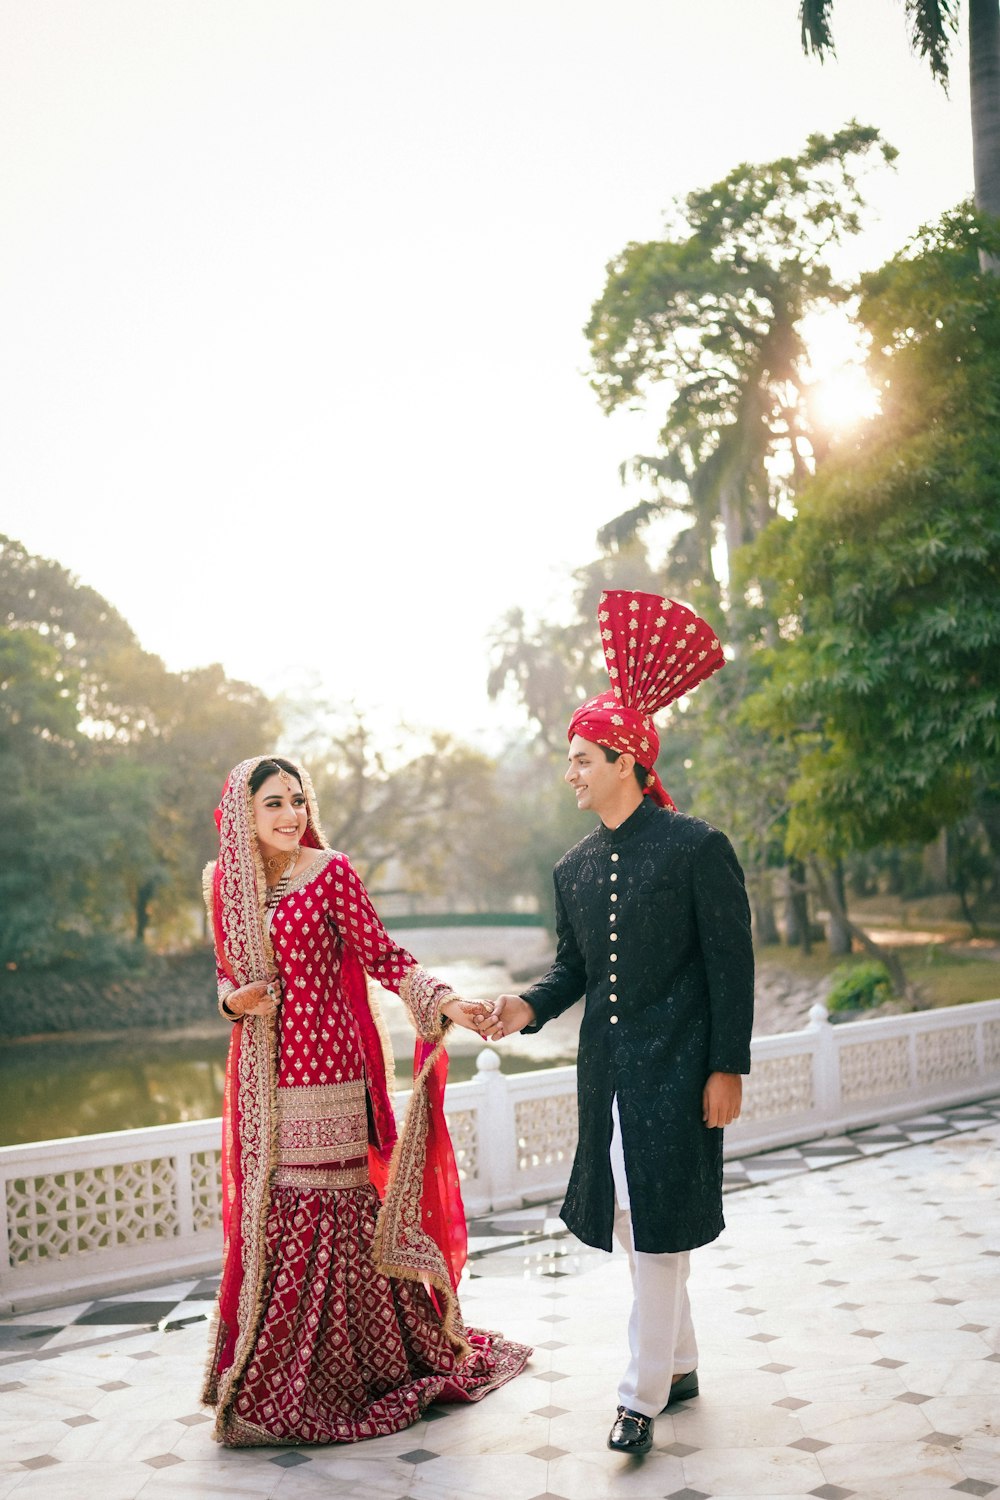 Un uomo e una donna vestiti in abiti indiani foto – Shahrah-e-Quaid-e-Azam  Immagine gratuita su Unsplash